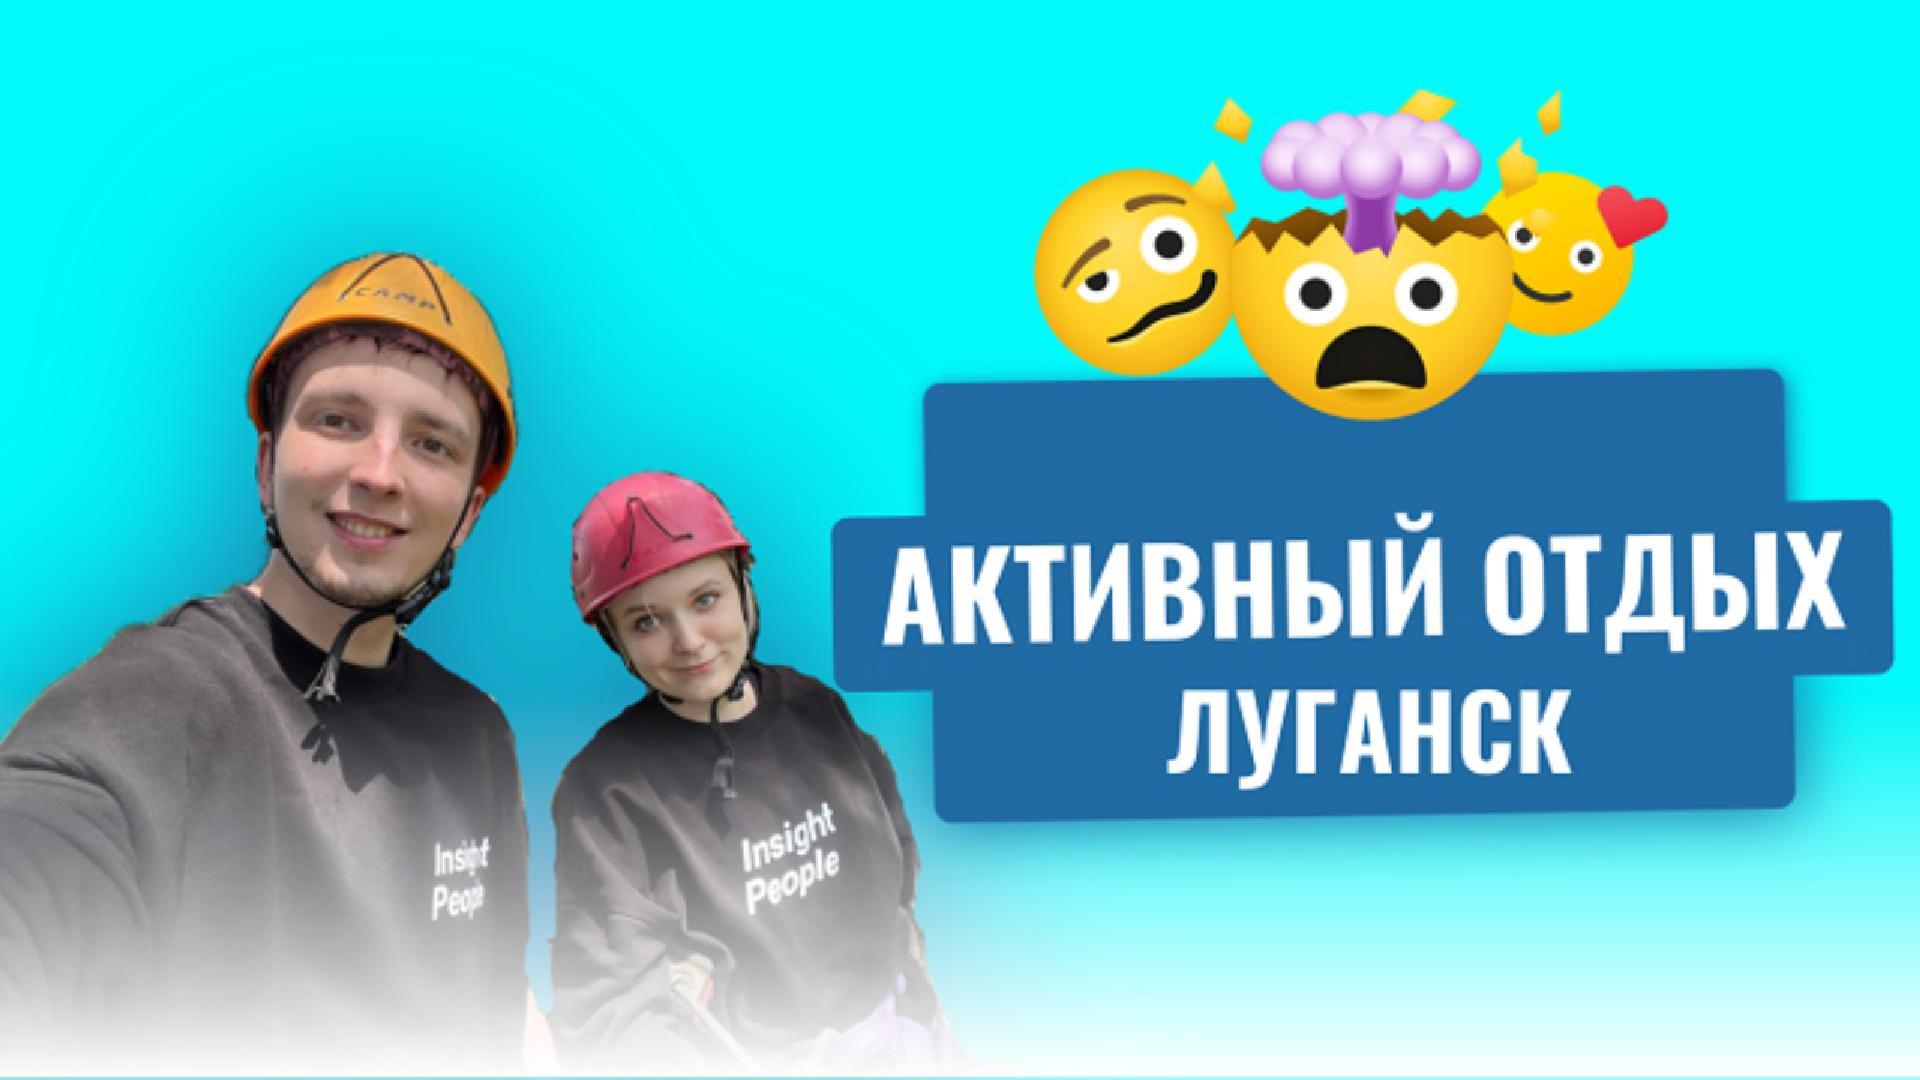 Family N — Активный отдых в Луганске